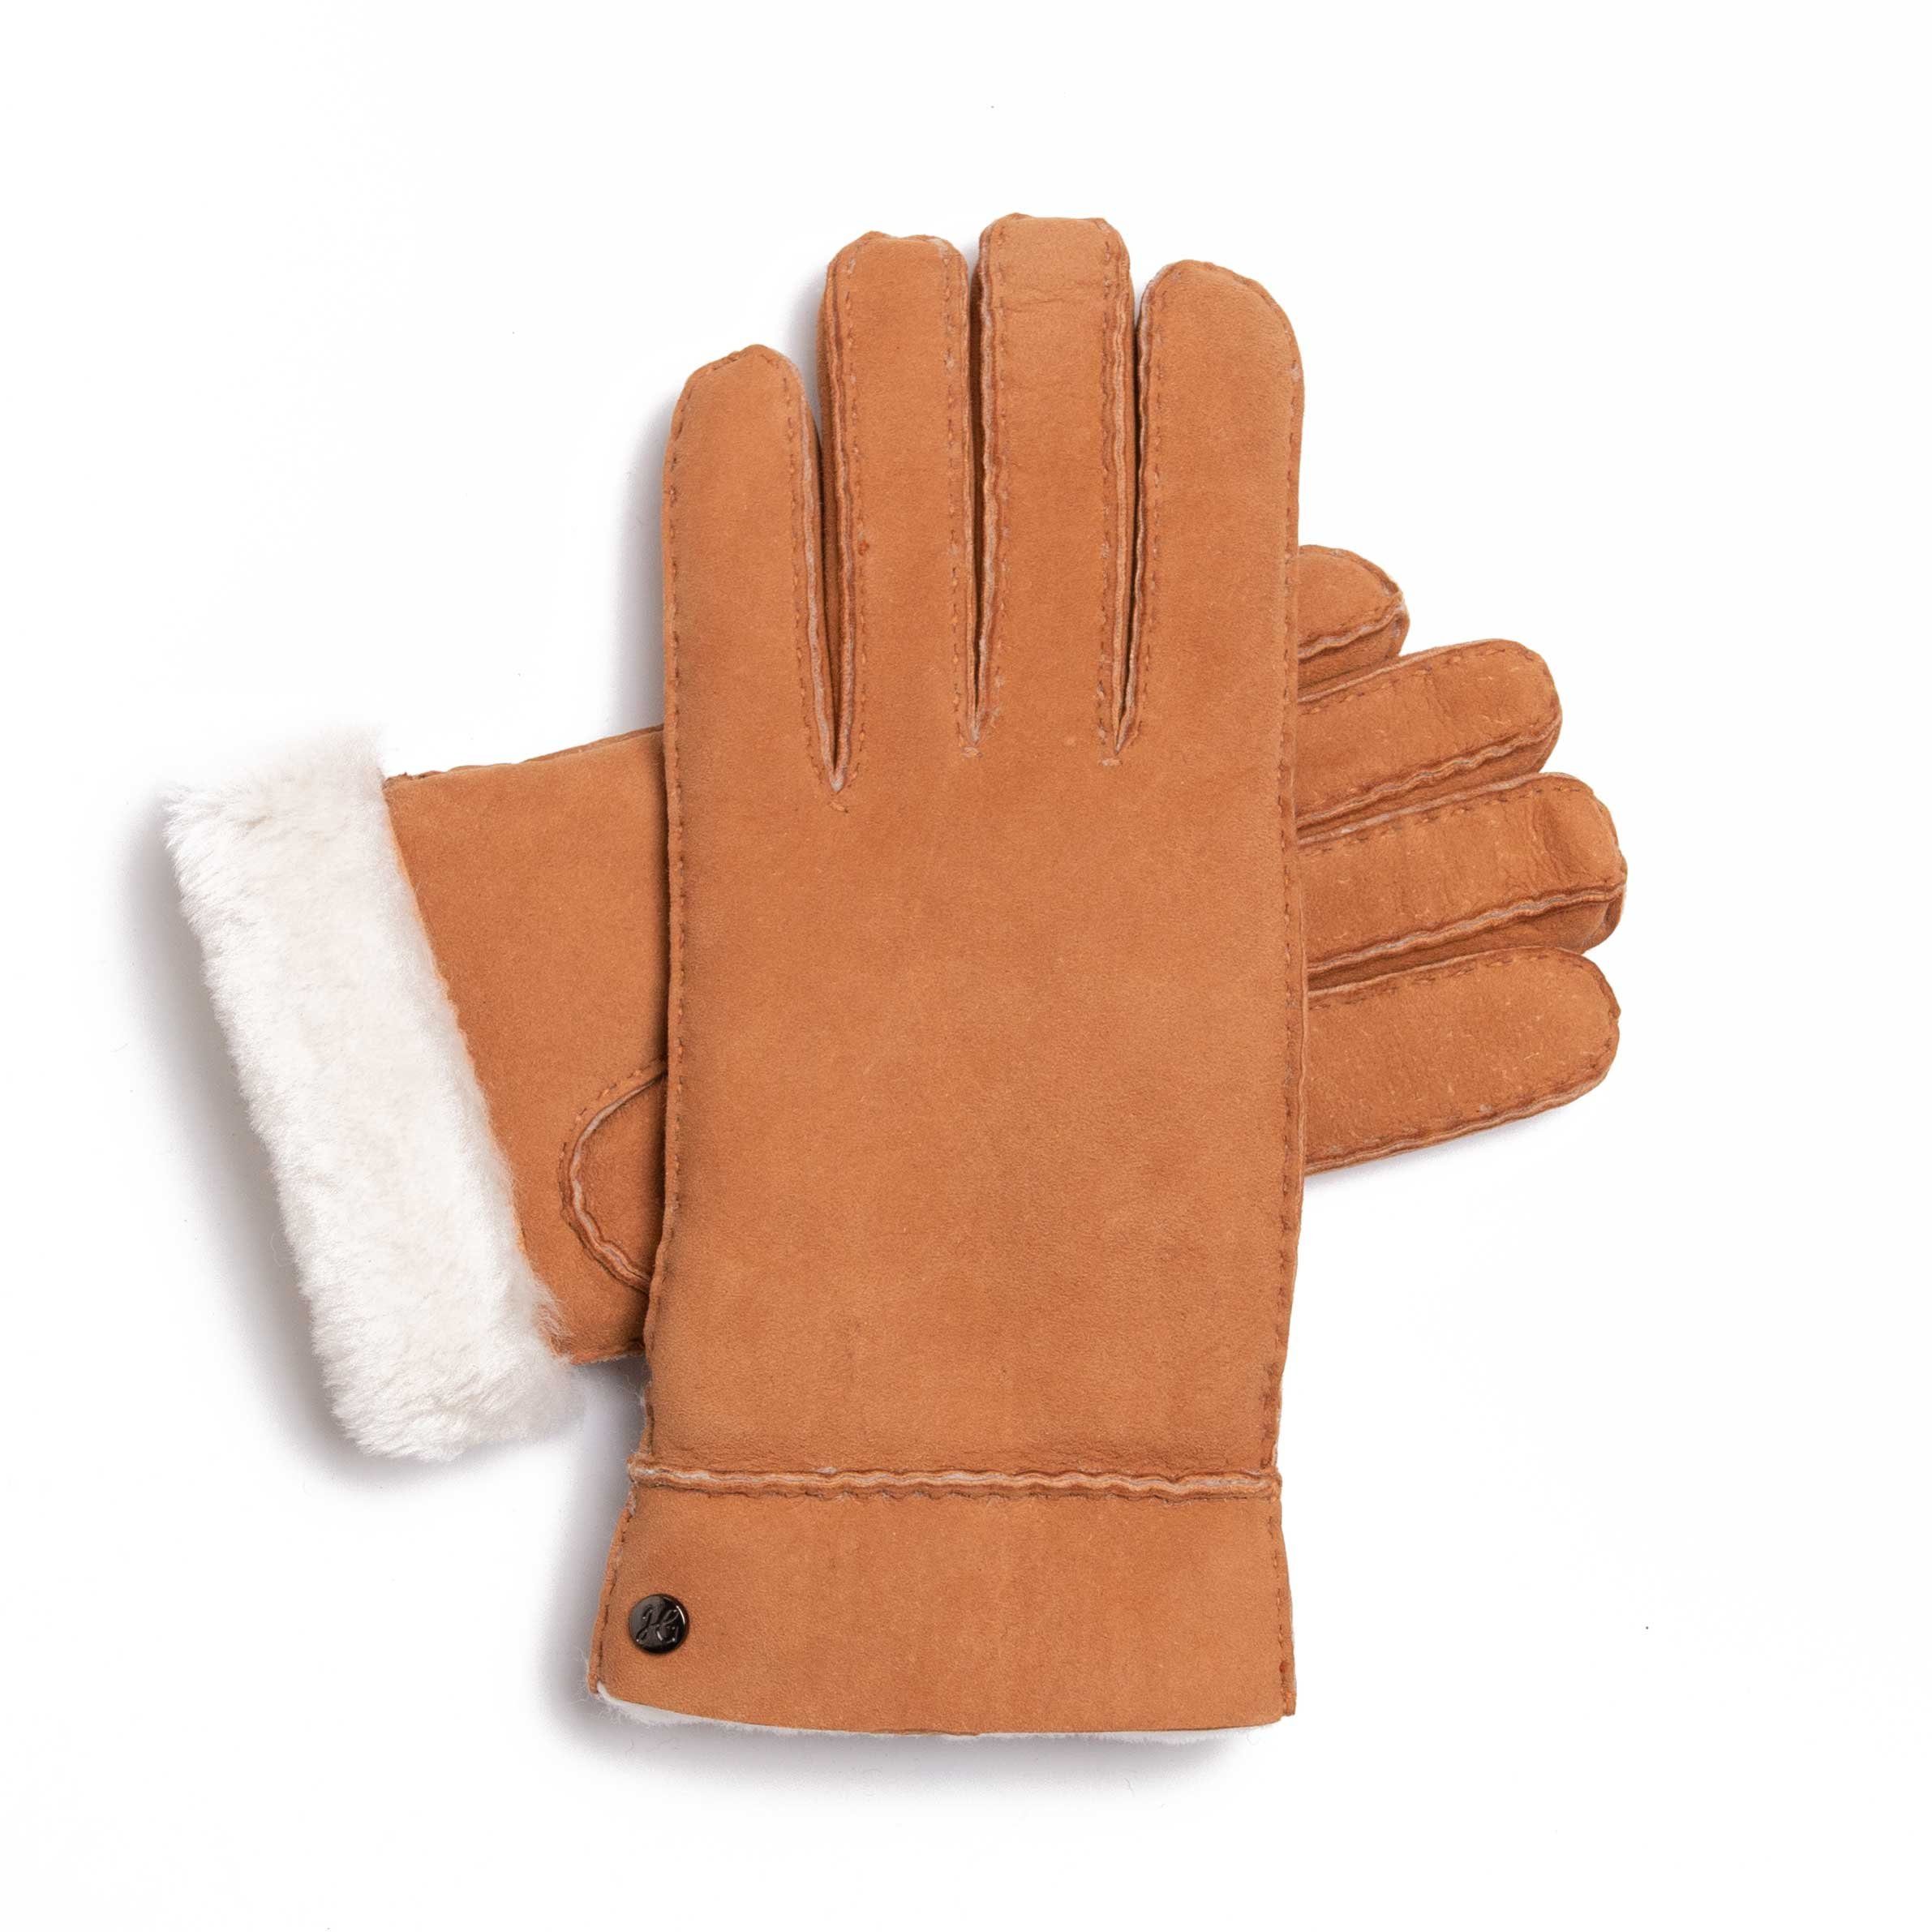 Hand Gewand by Weikert Lederhandschuhe ADAM - Lammfell-Handschuhe aus spanischem Merino-Lammfell Natur